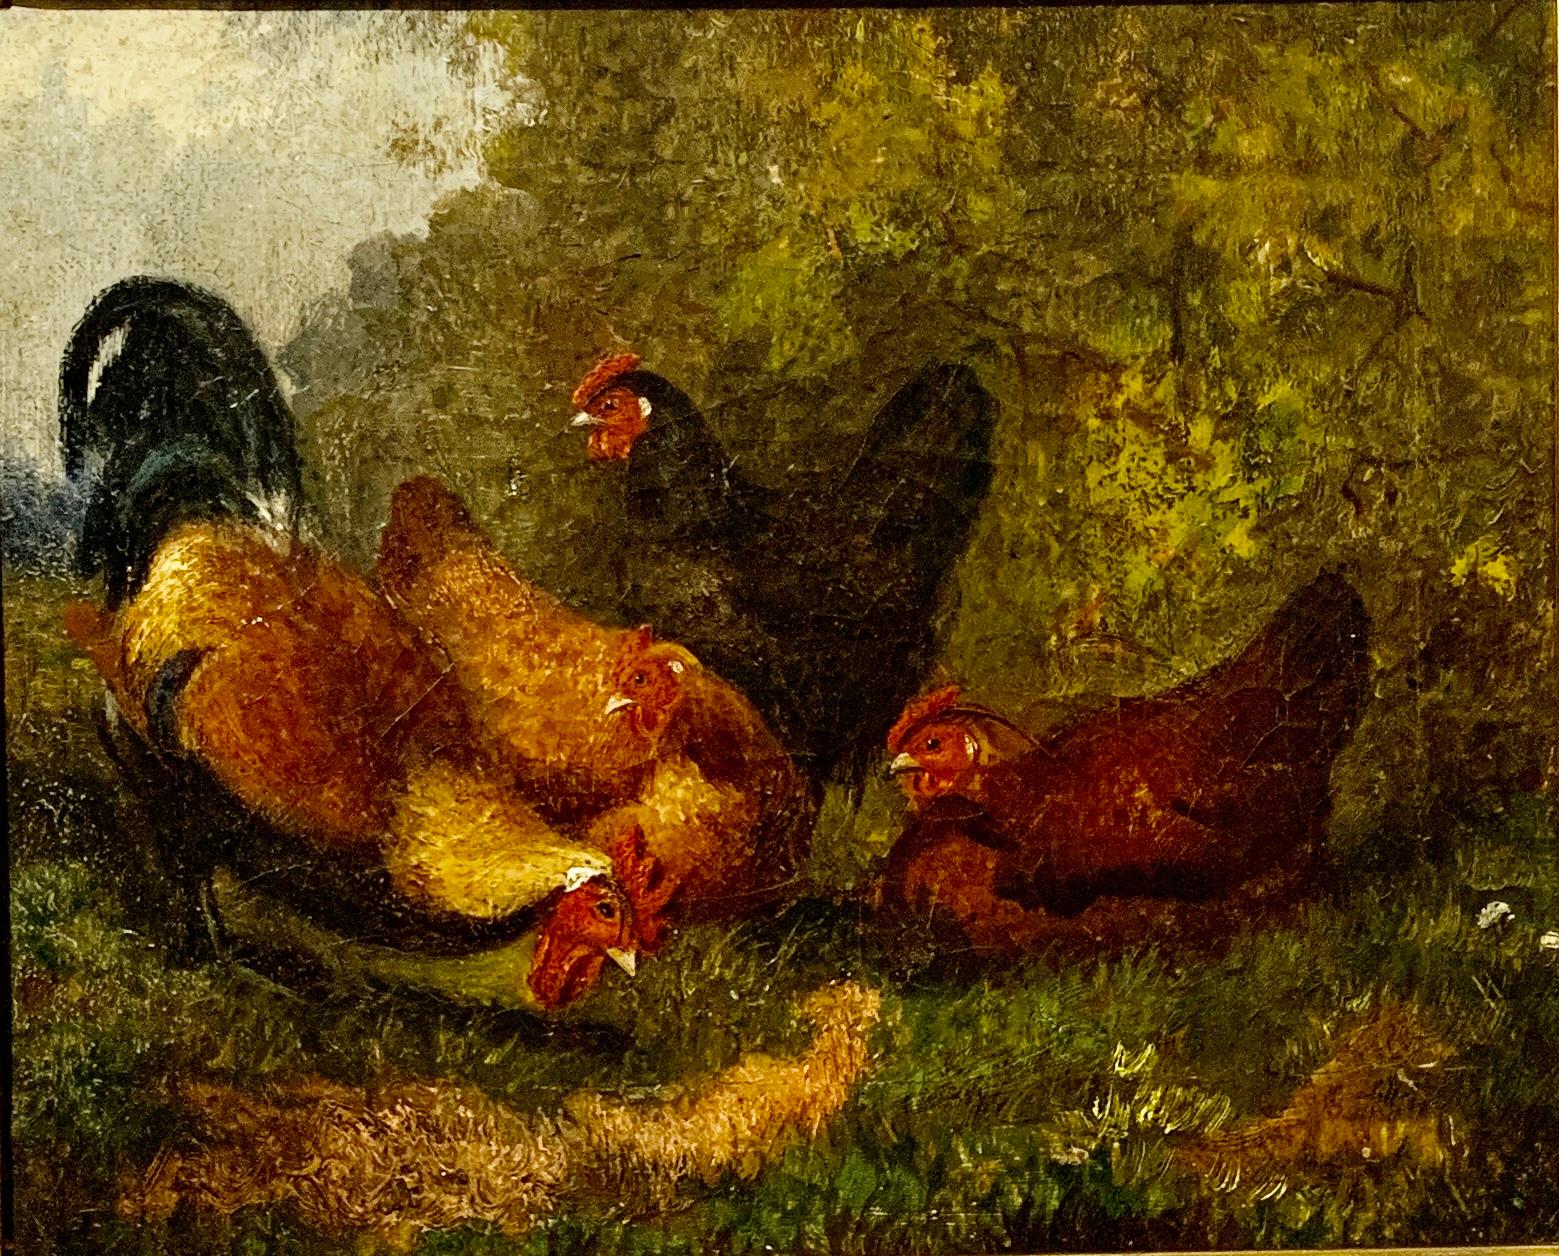 Englisches Volkskunstporträt von Hühnern aus dem 19. Jahrhundert, Landschaft mit Ahornrahmen – Painting von Unknown